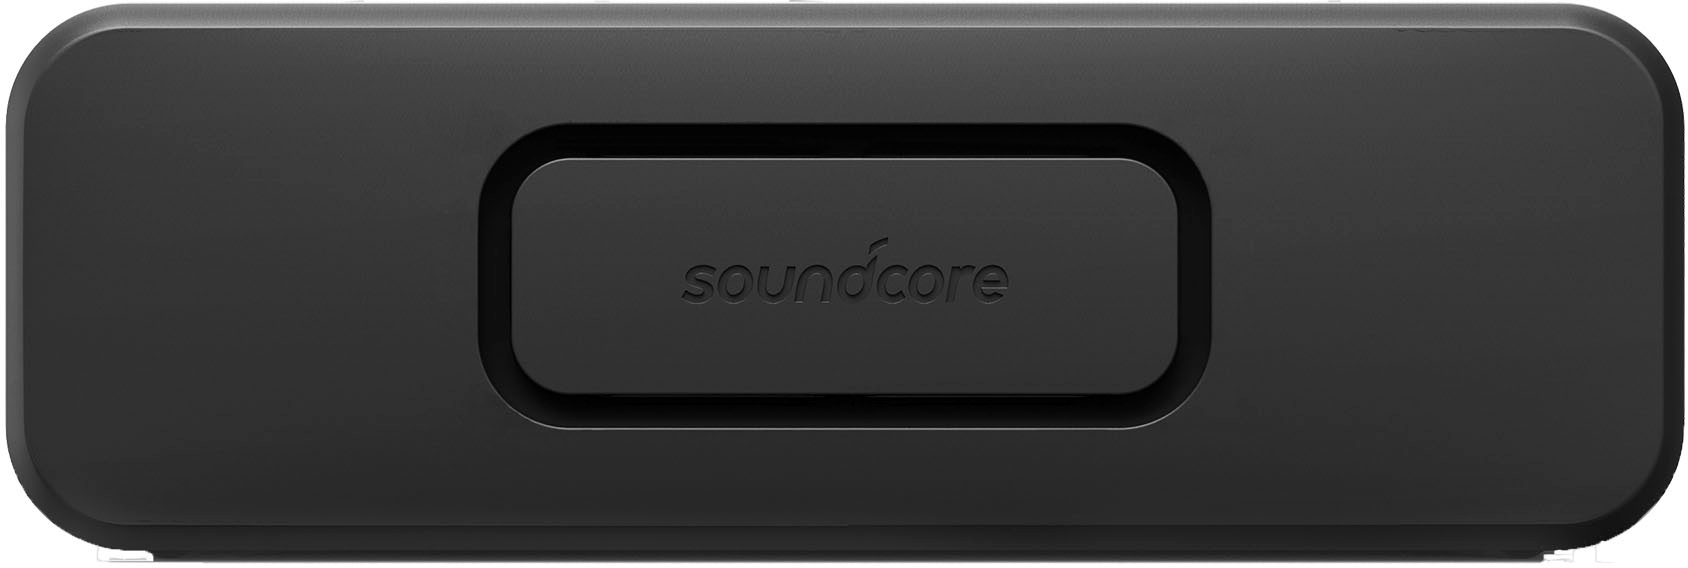 Soundcore Portable Best Black 2 Anker by A3125Z11 Bluetooth Select Buy: Waterproof Speaker